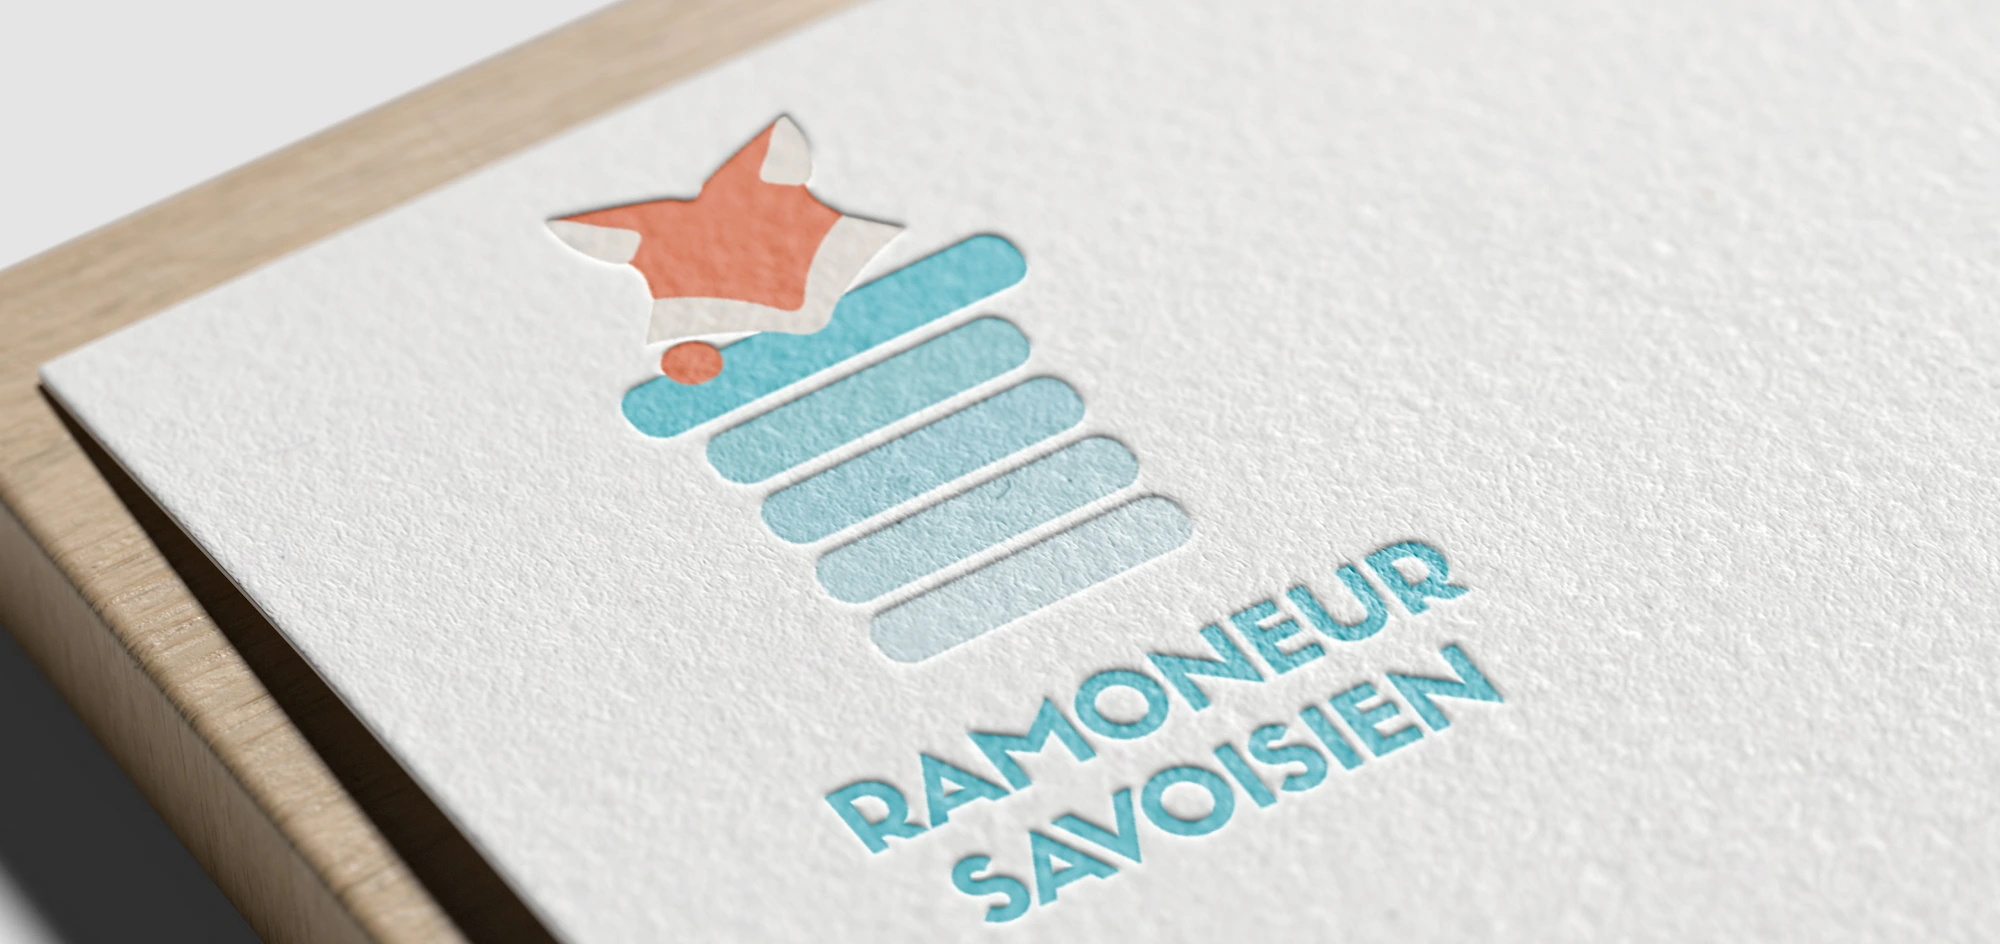 Le mockup du logo du Ramoneur Savoisien, sur papier